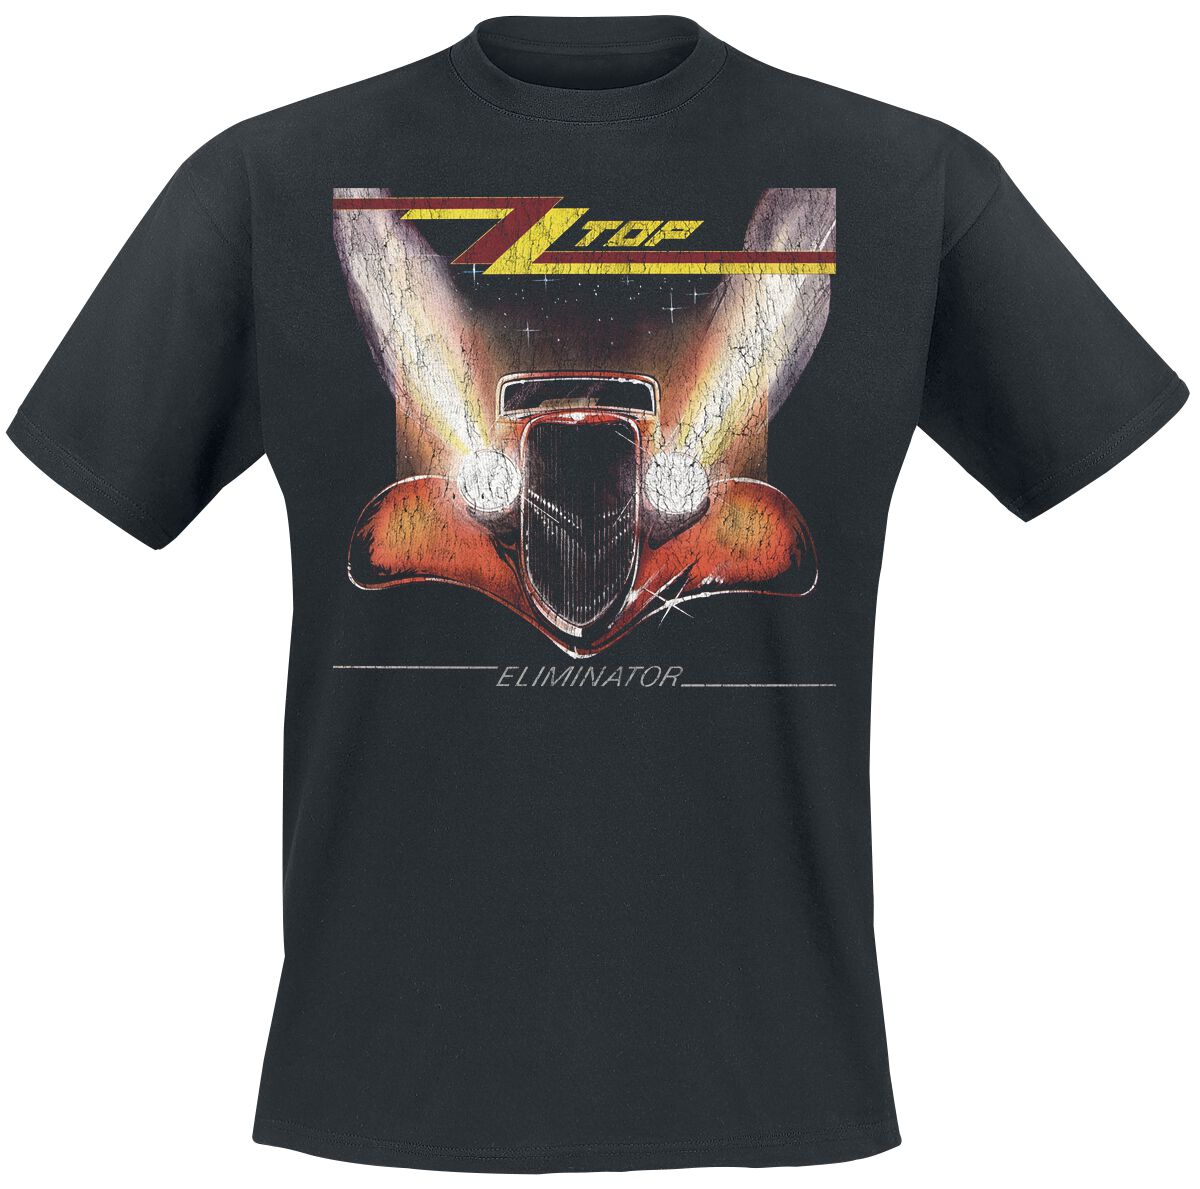 ZZ Top T-Shirt - Eliminator - S bis 3XL - für Männer - Größe S - schwarz  - Lizenziertes Merchandise!